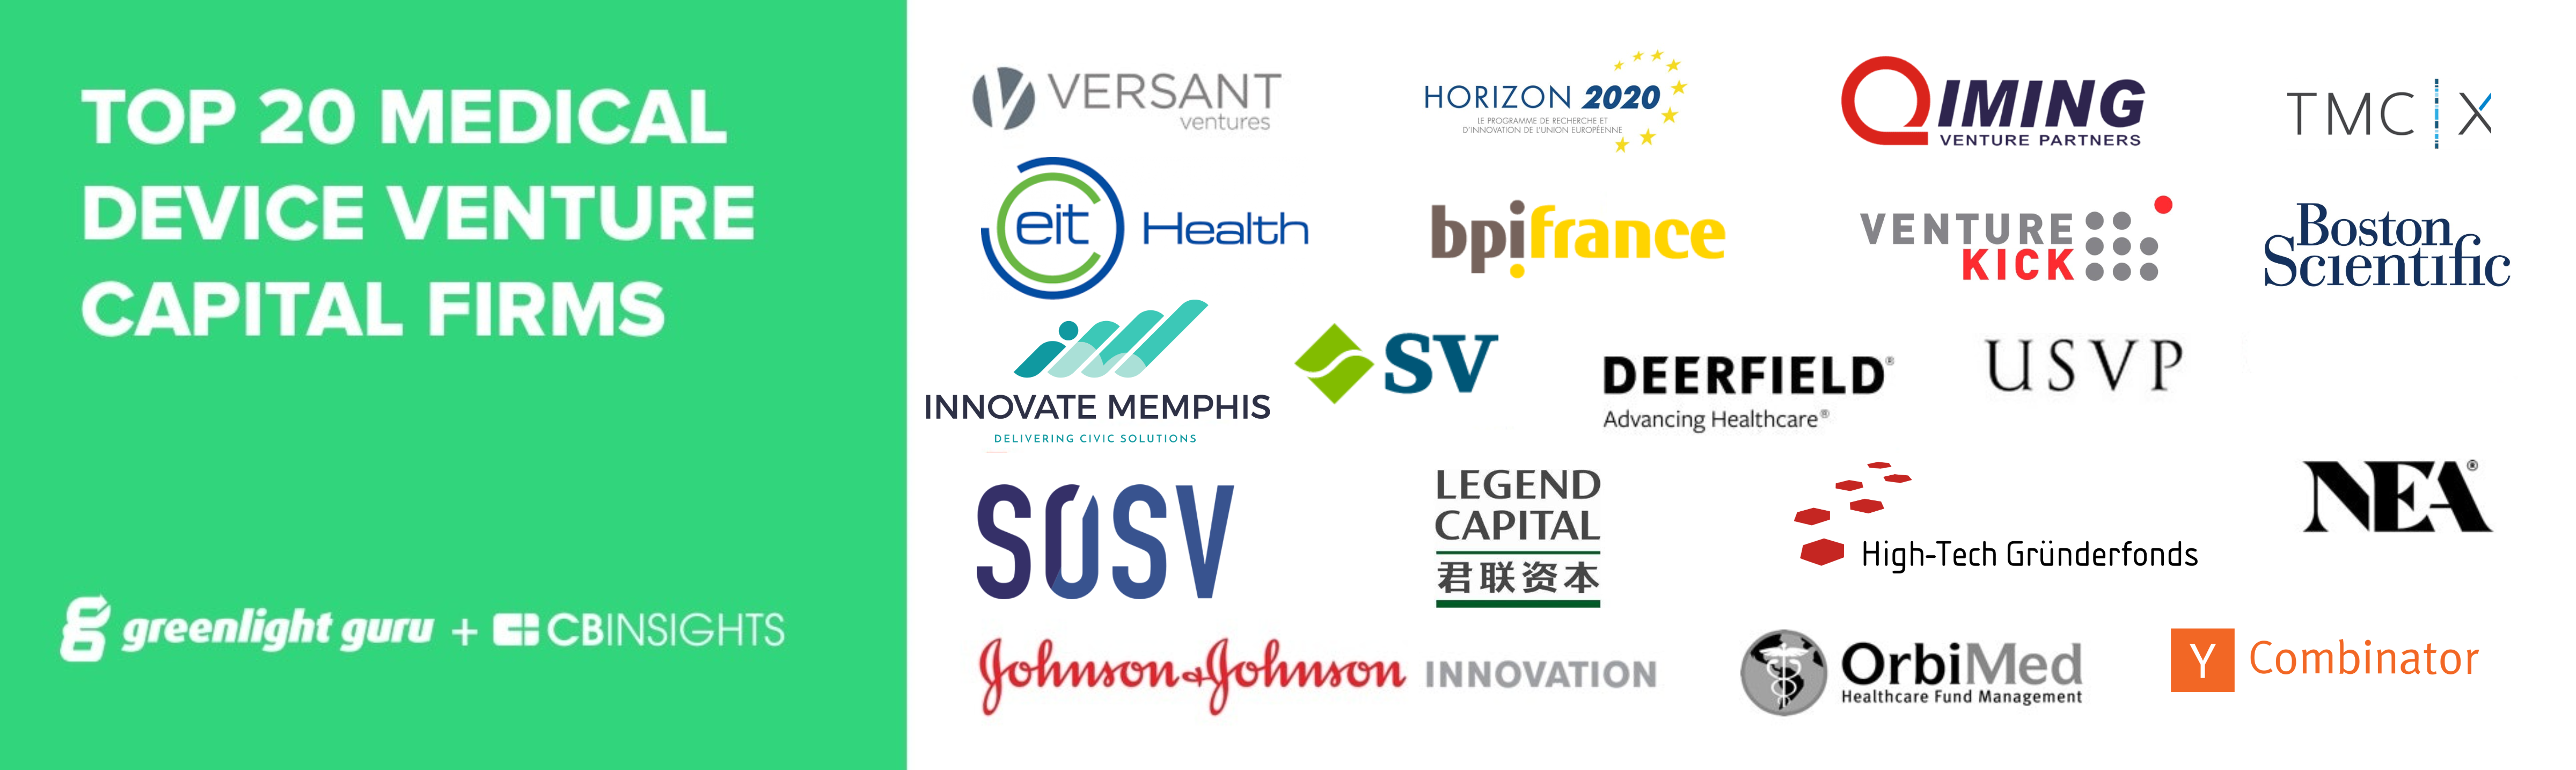 argument tilbehør involveret Top 20 Medical Device Venture Capital Firms